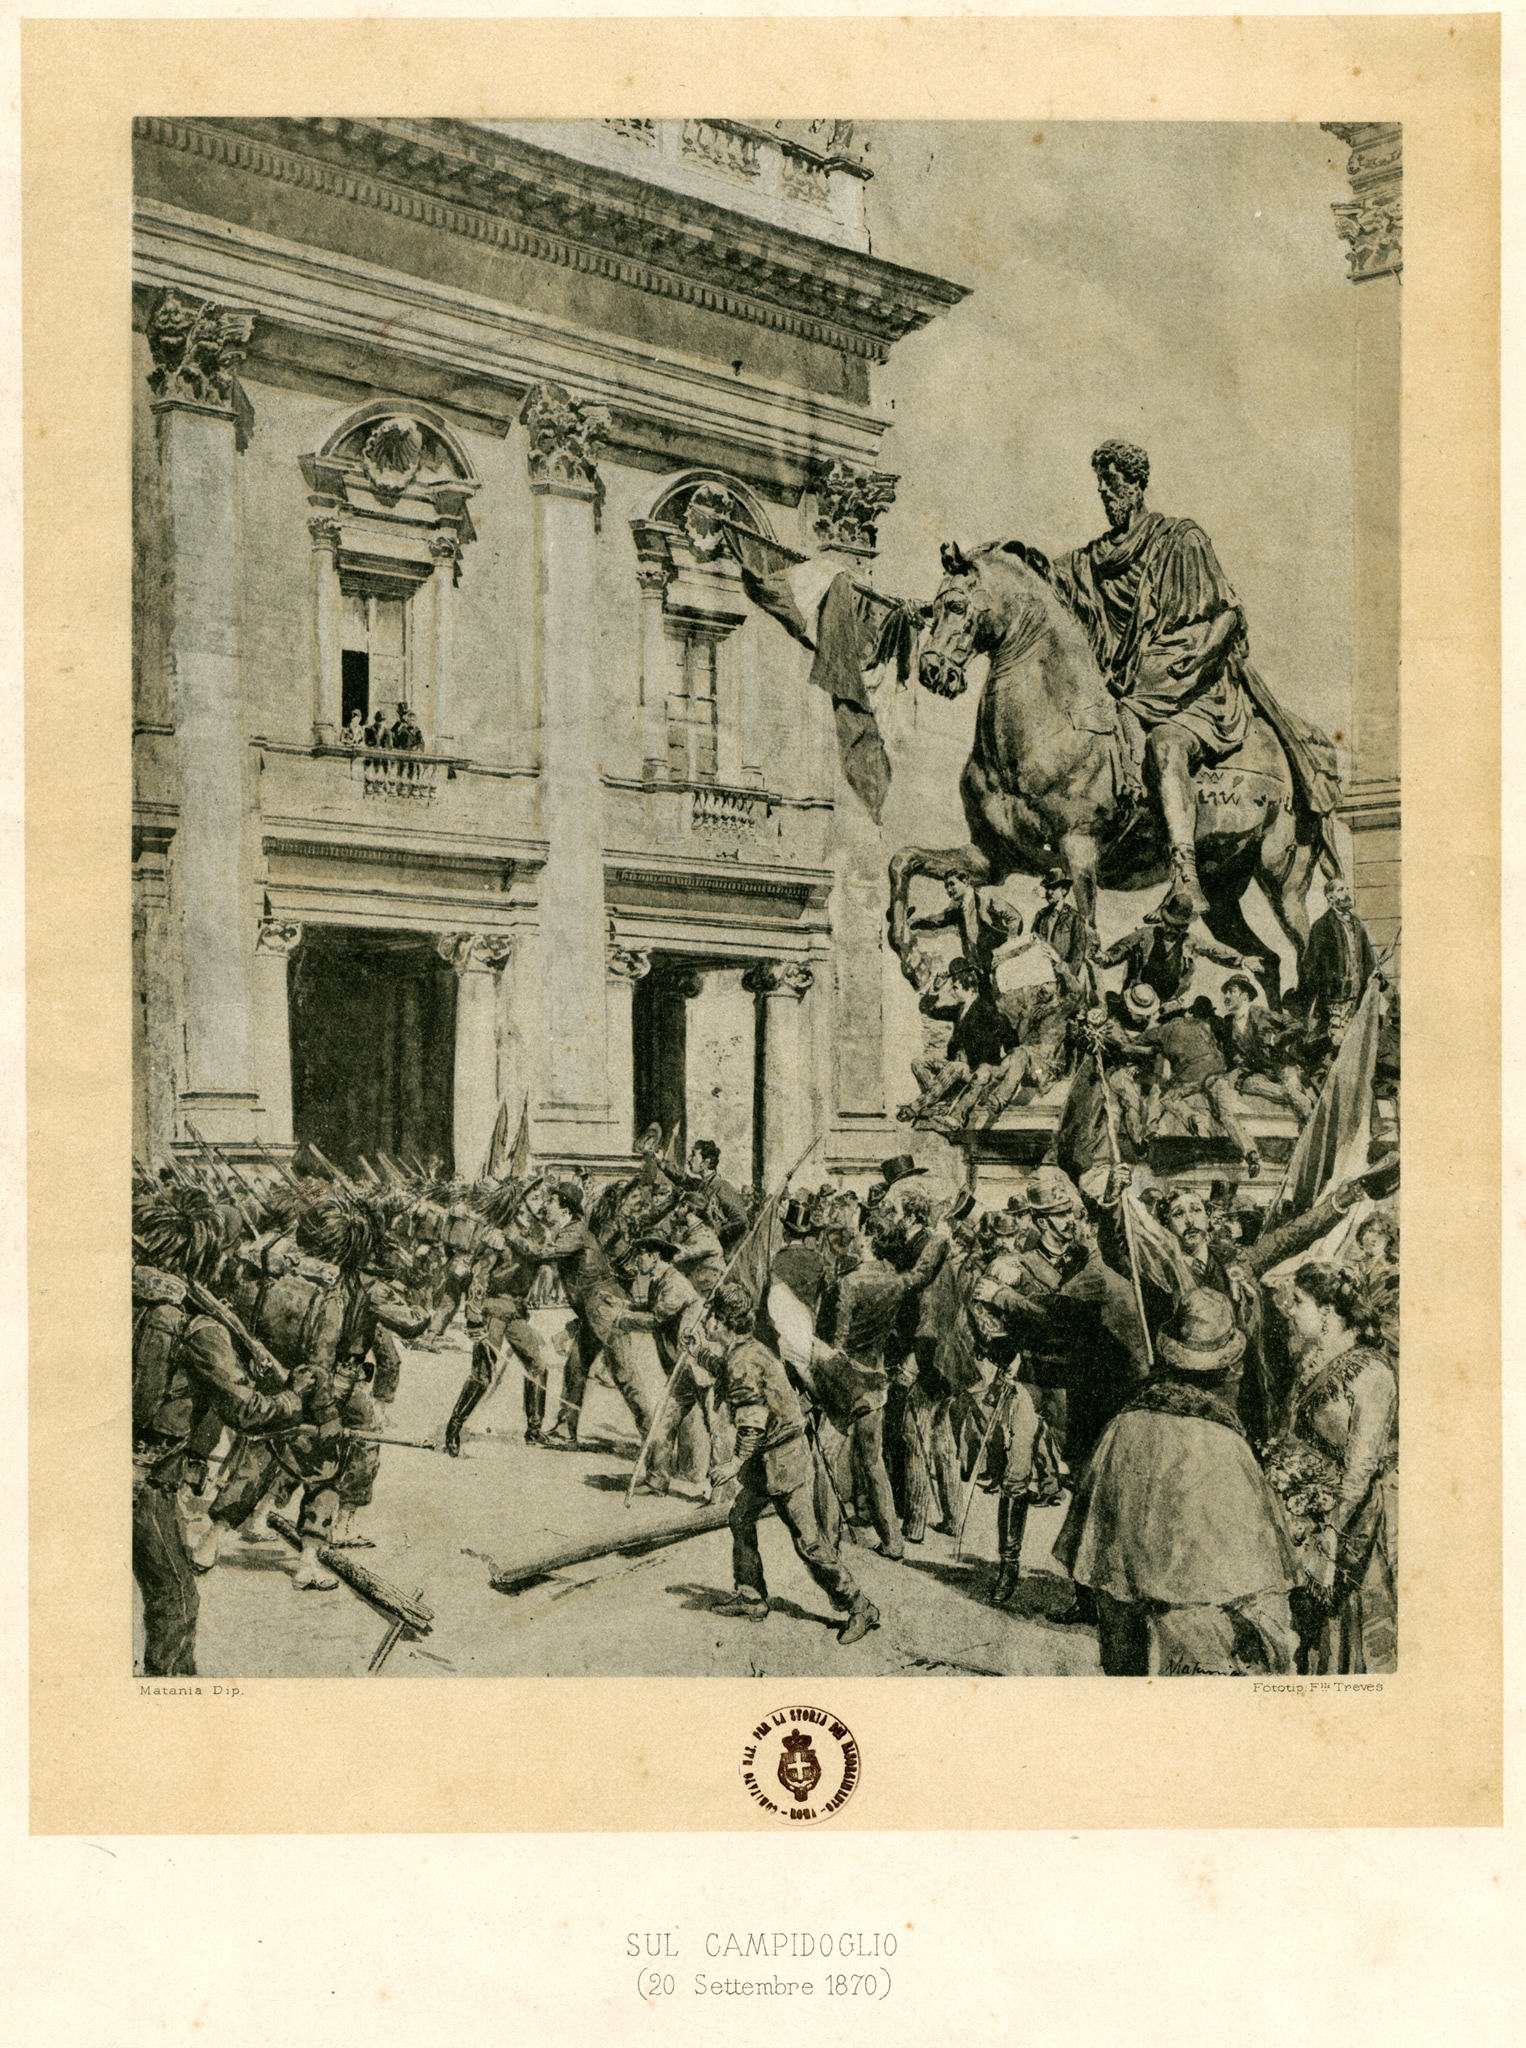 Incisione raffigurante i festeggiamenti sul Campidoglio il 20 settembre 1870